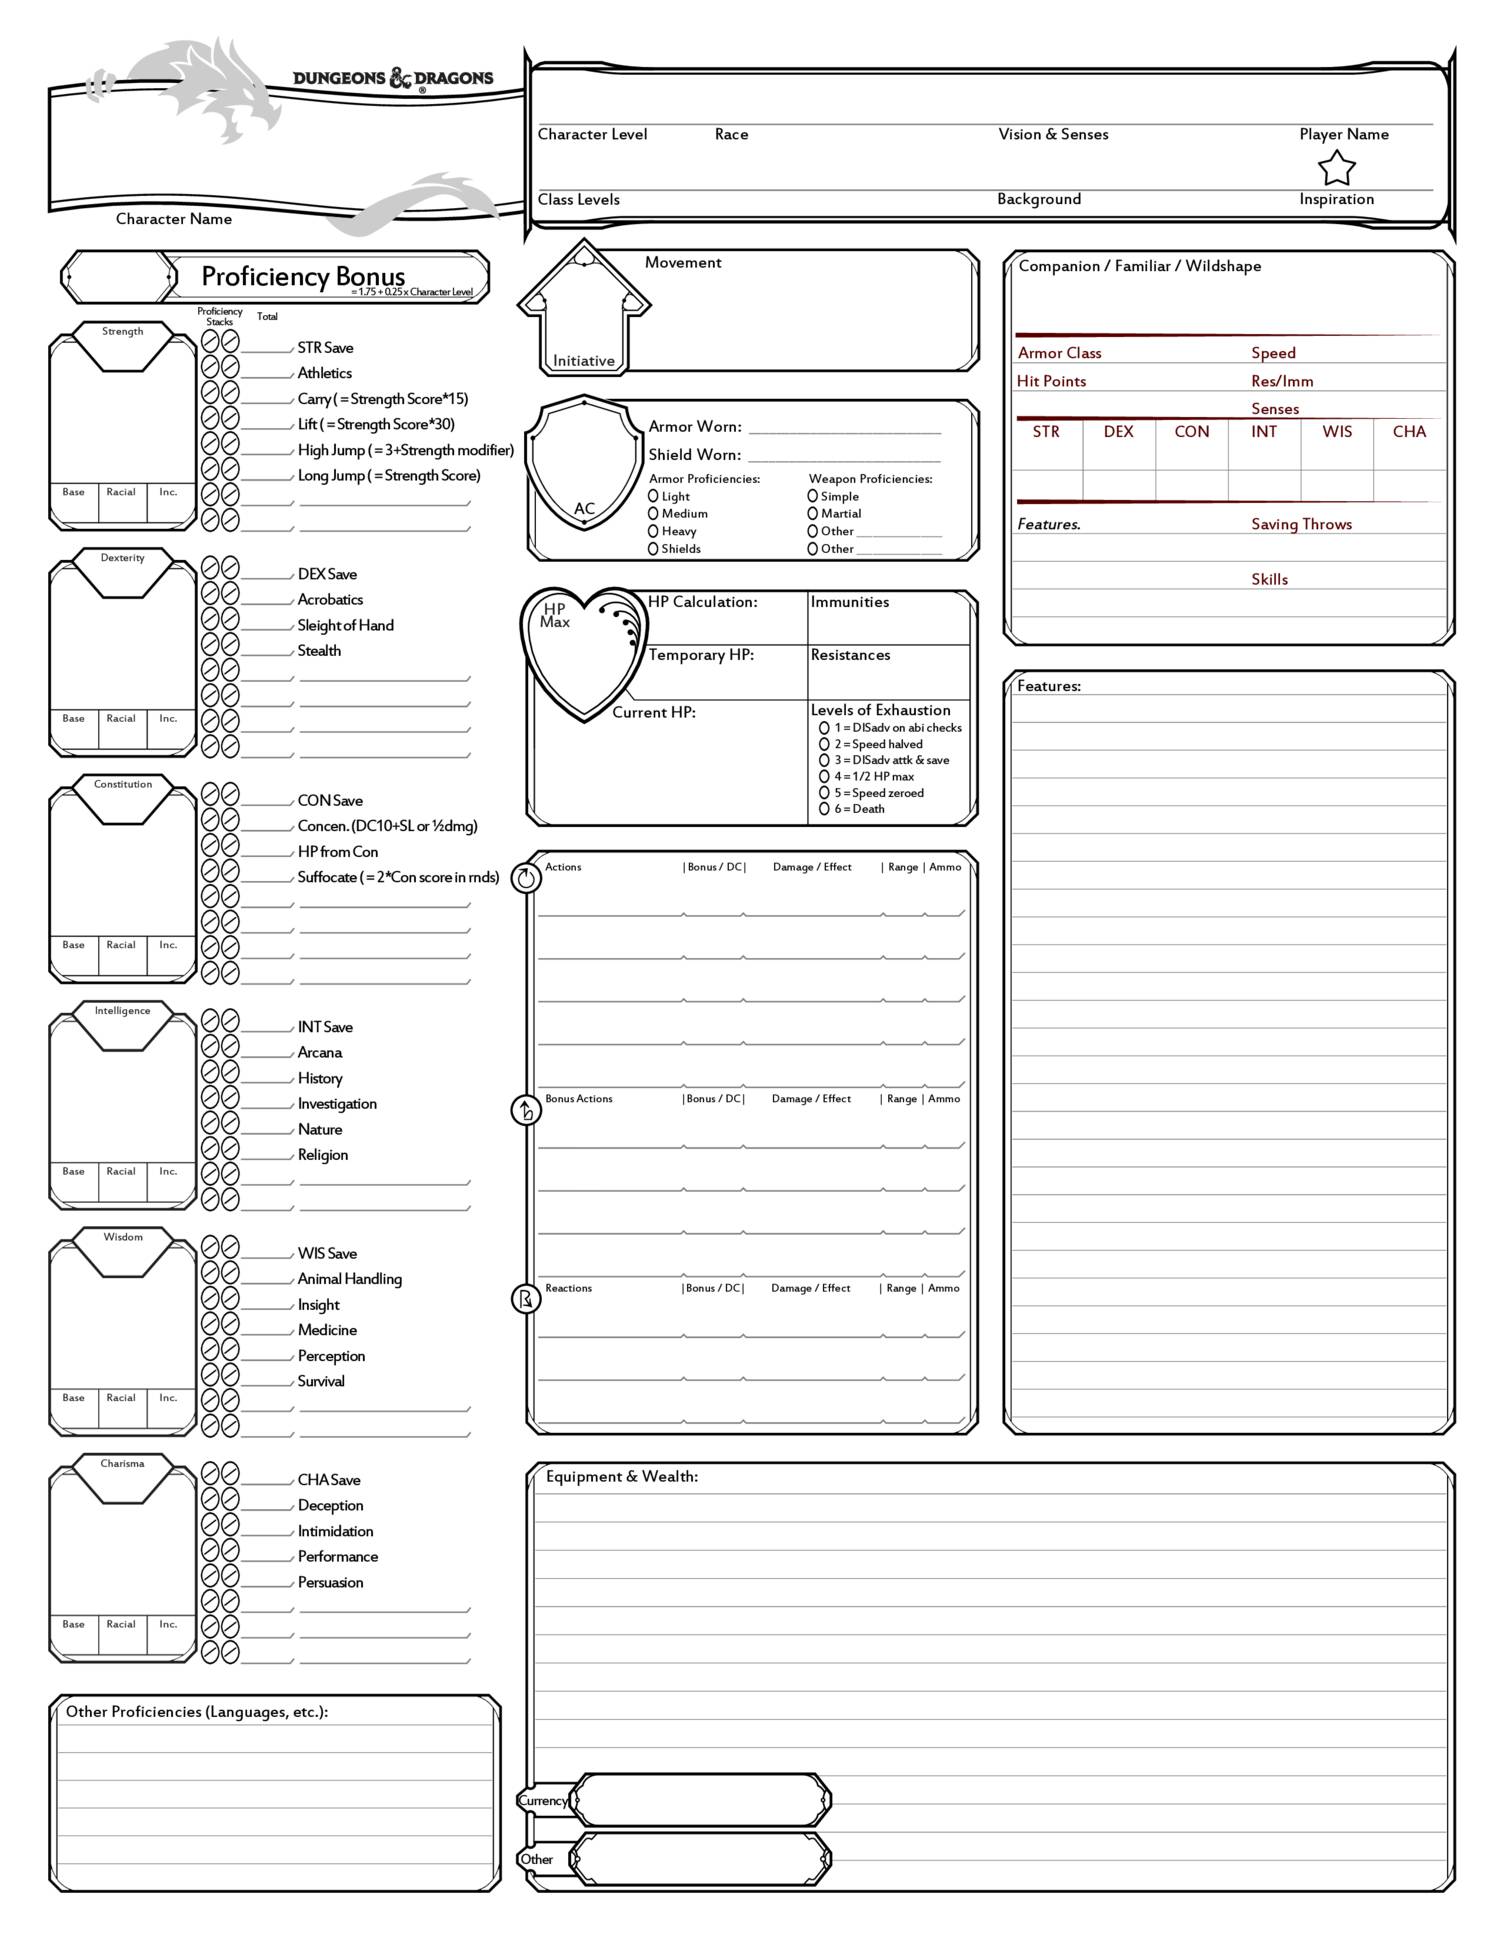 ! D&D5e Character Sheet EvansJ 160505 v3.72 'core'.pdf | DocDroid